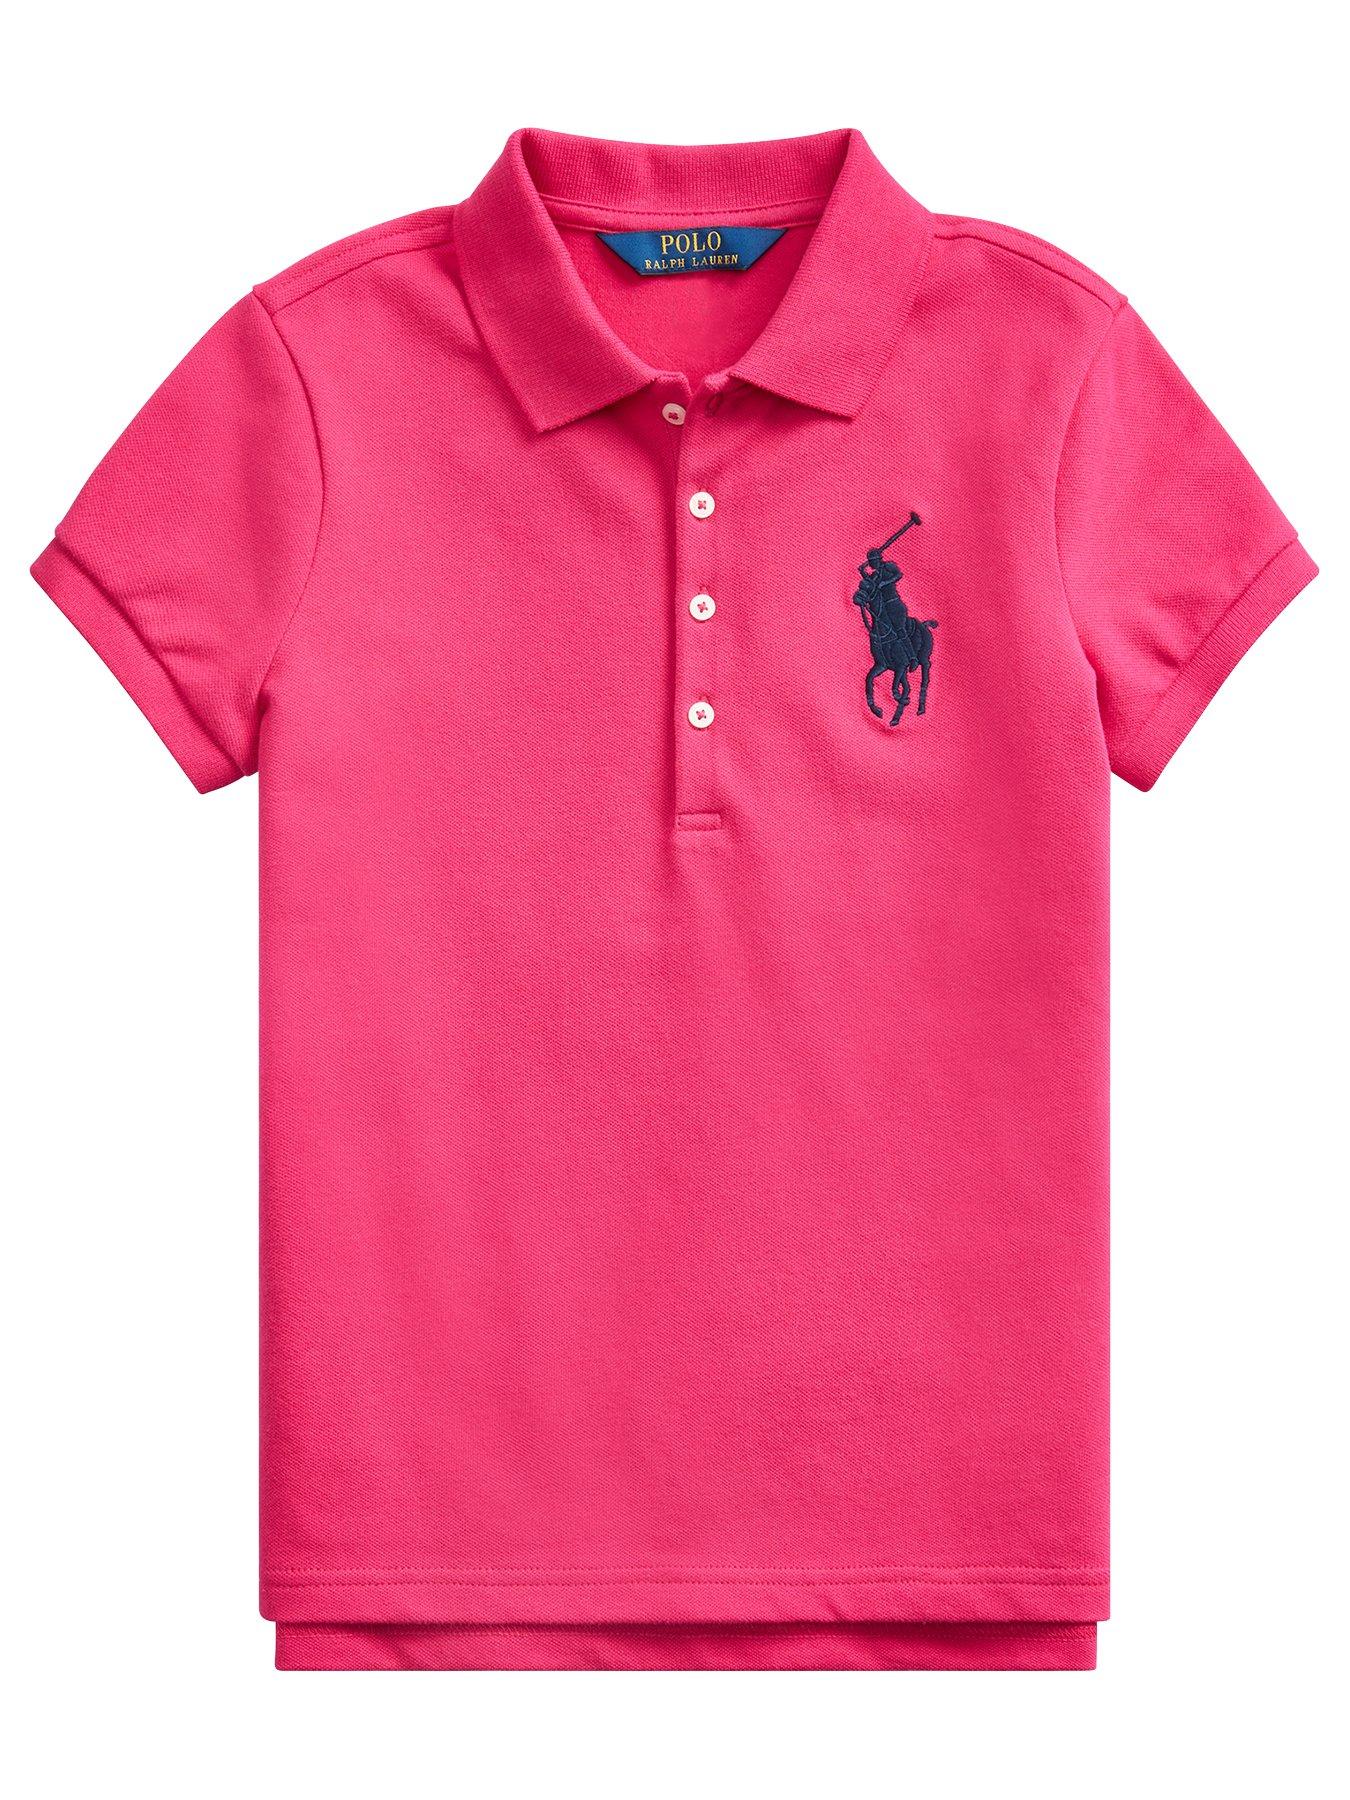 ralph lauren polo shirts for girls